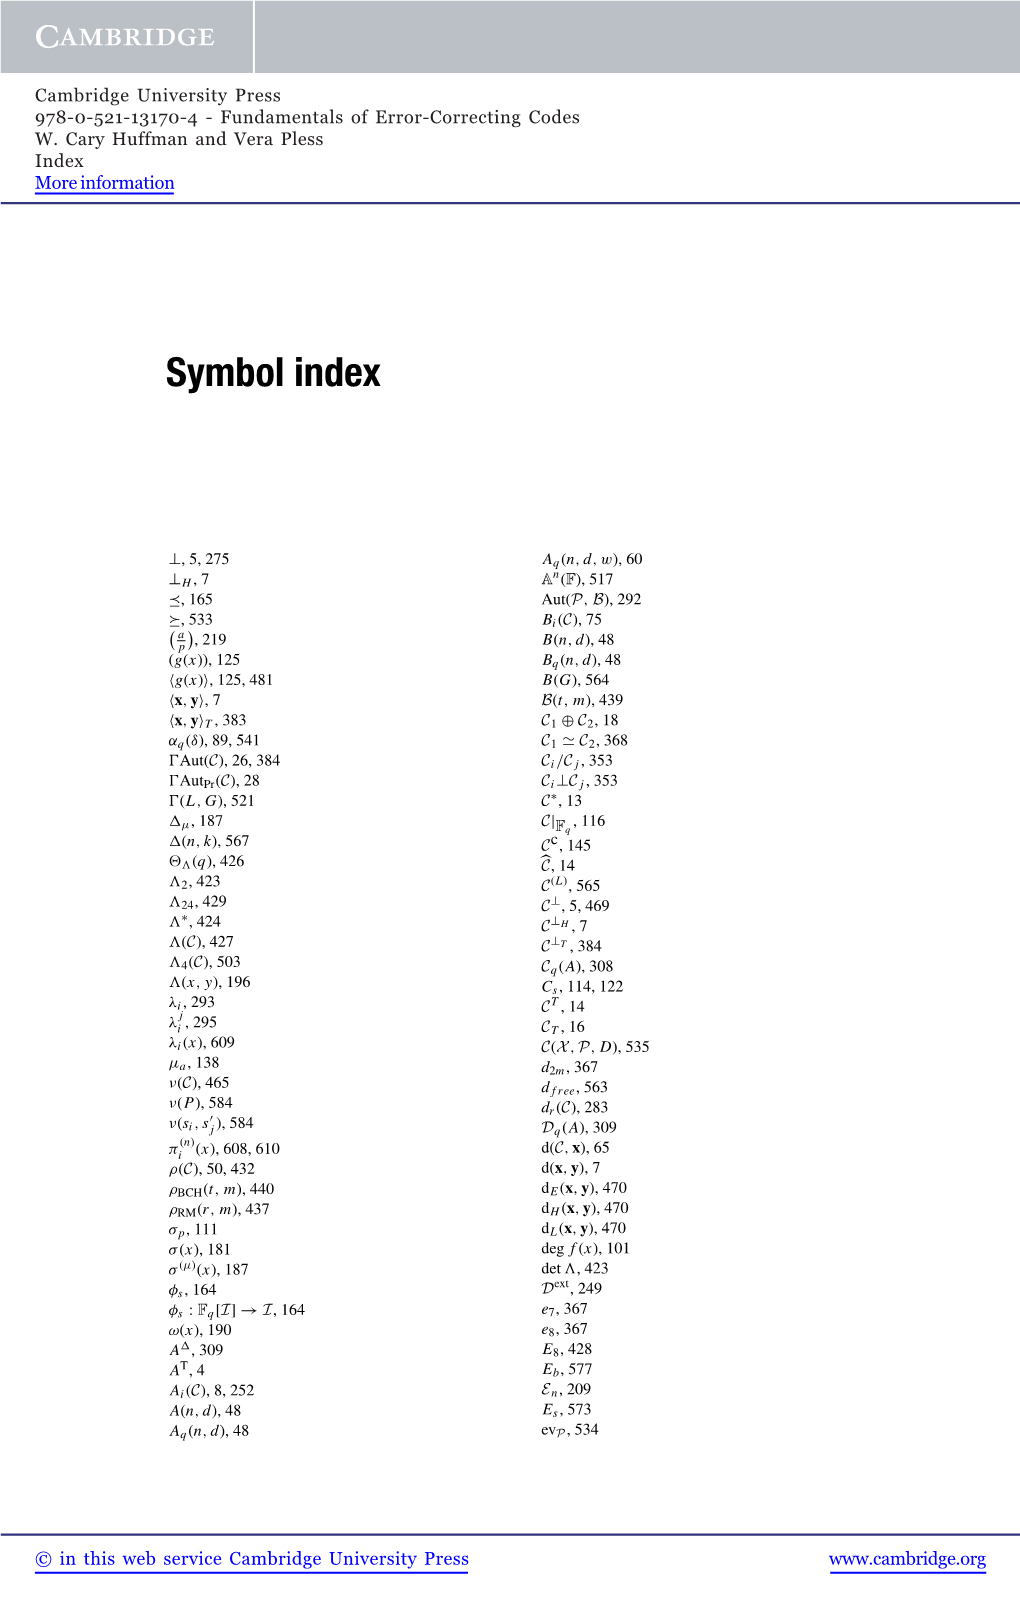 Symbol Index